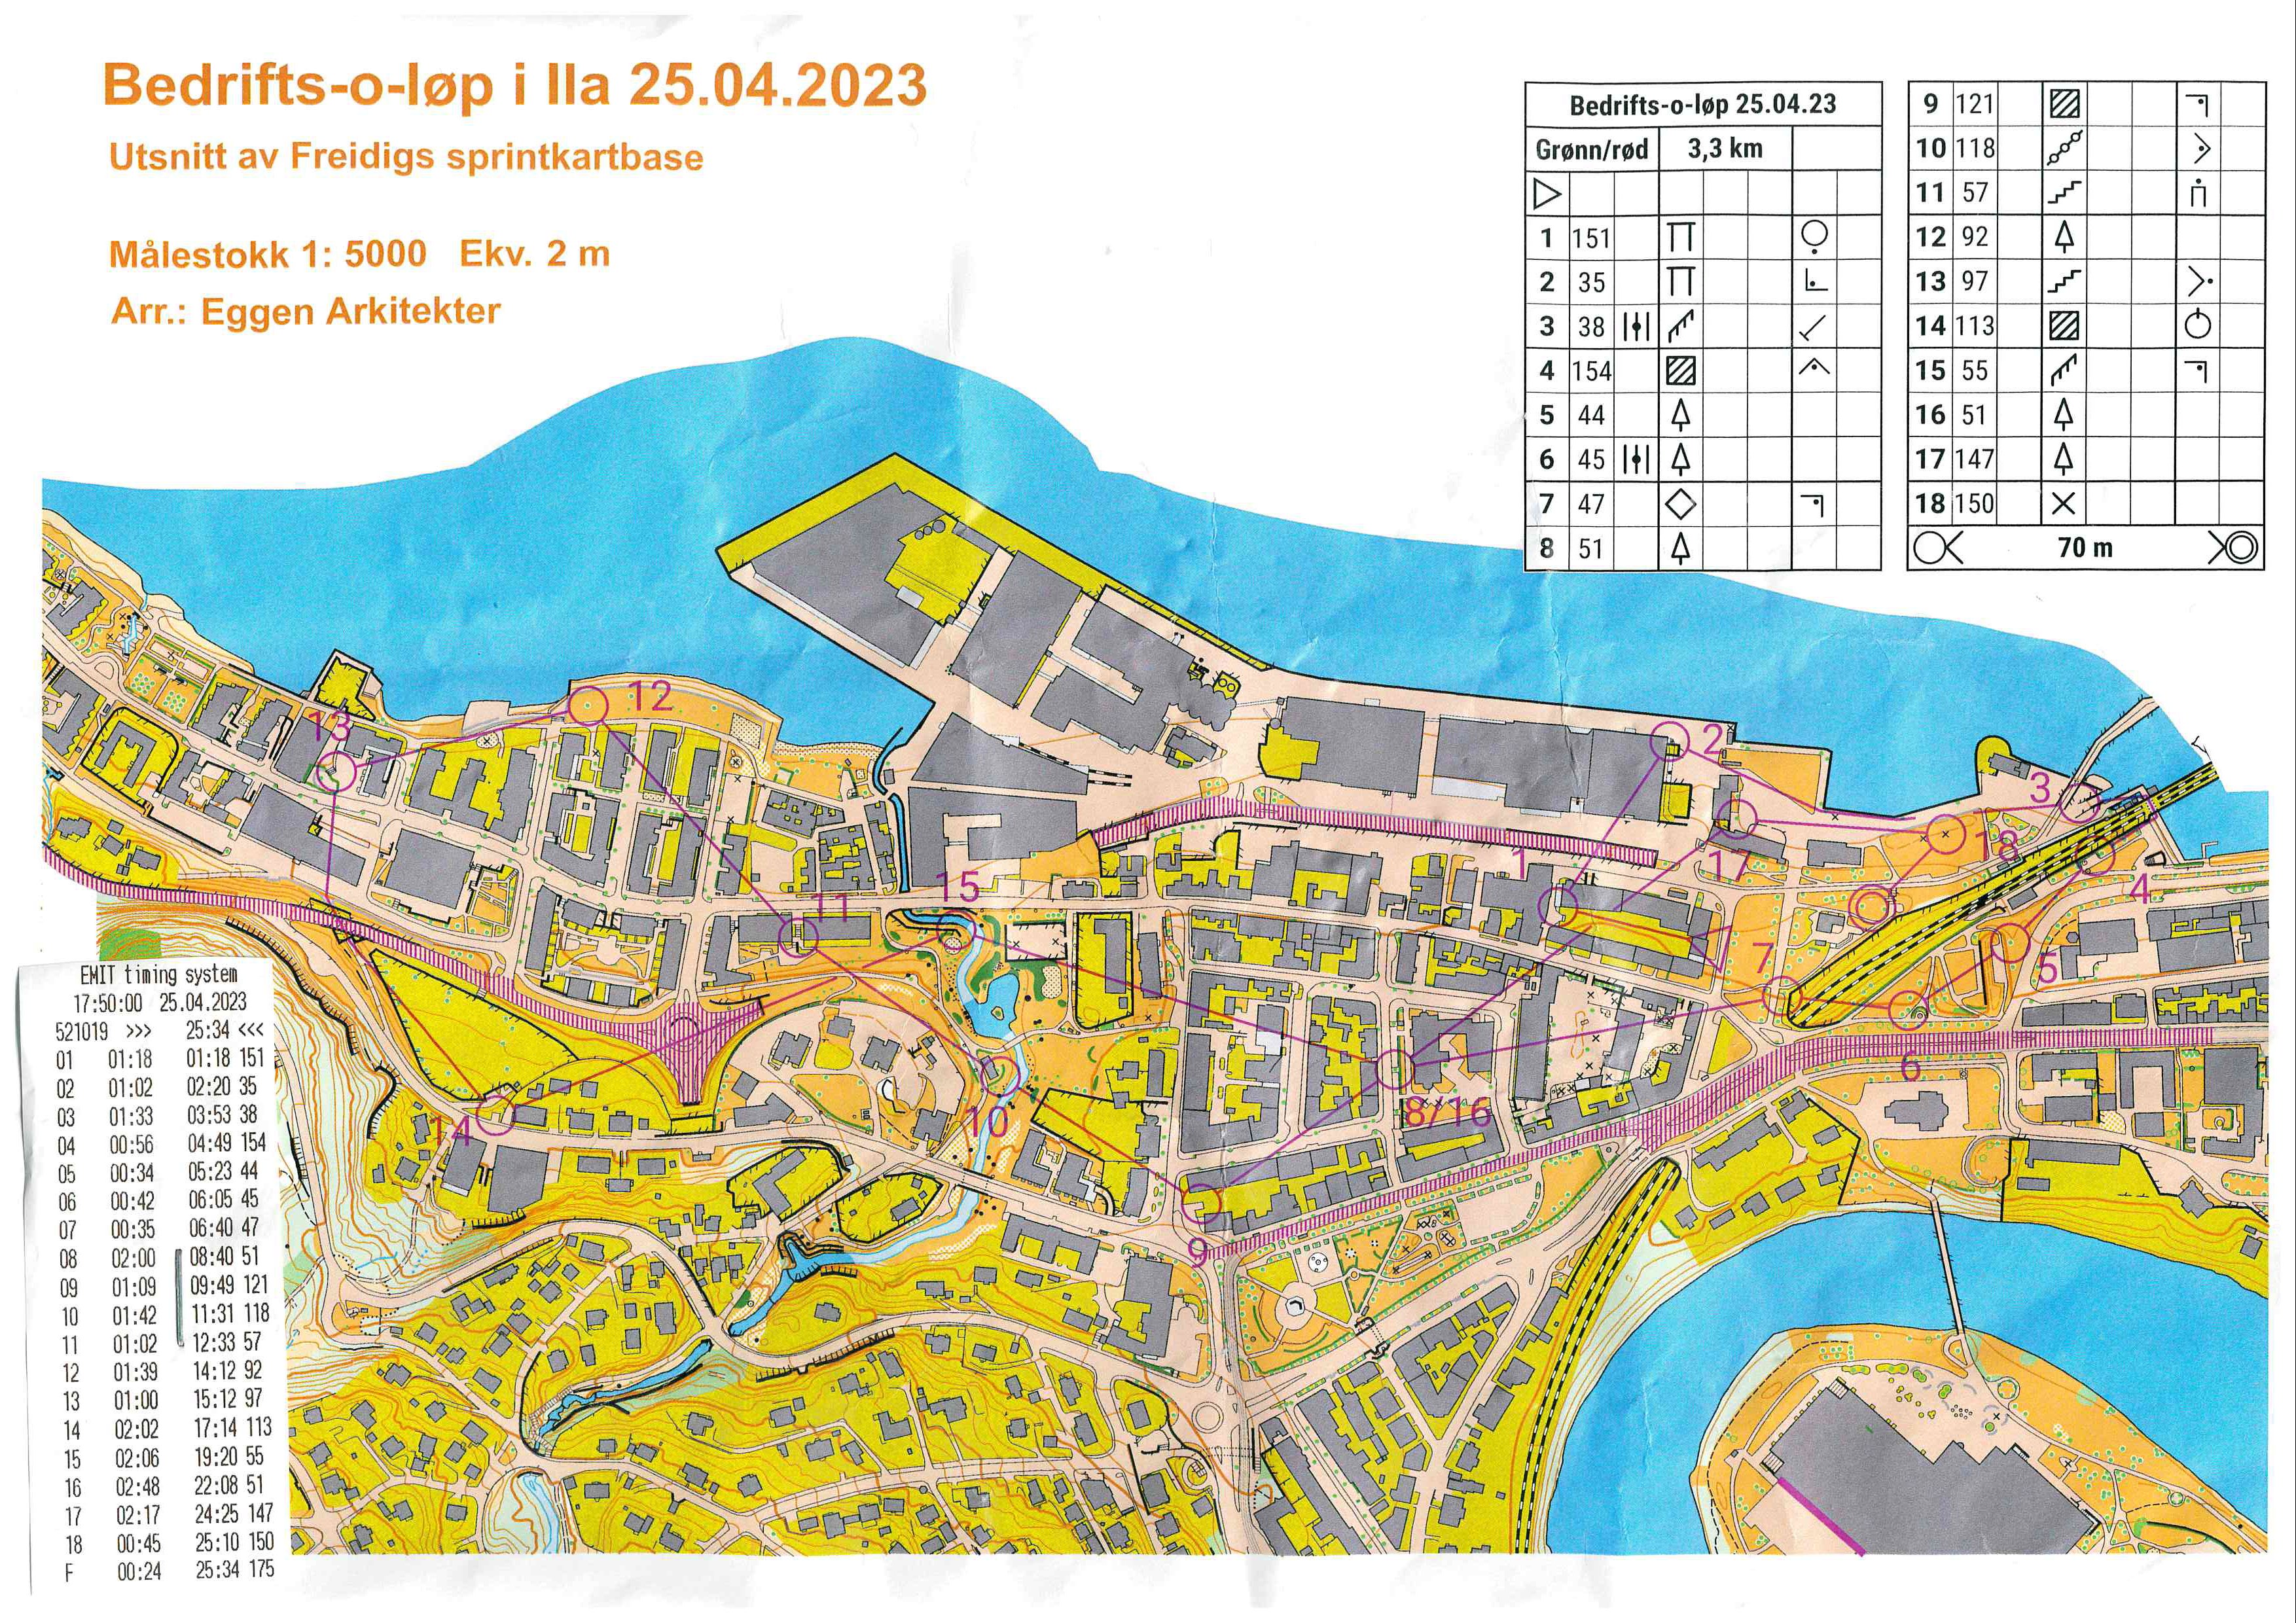 Bedrifts-o-løp, sprint, Skansen (2023-04-25)